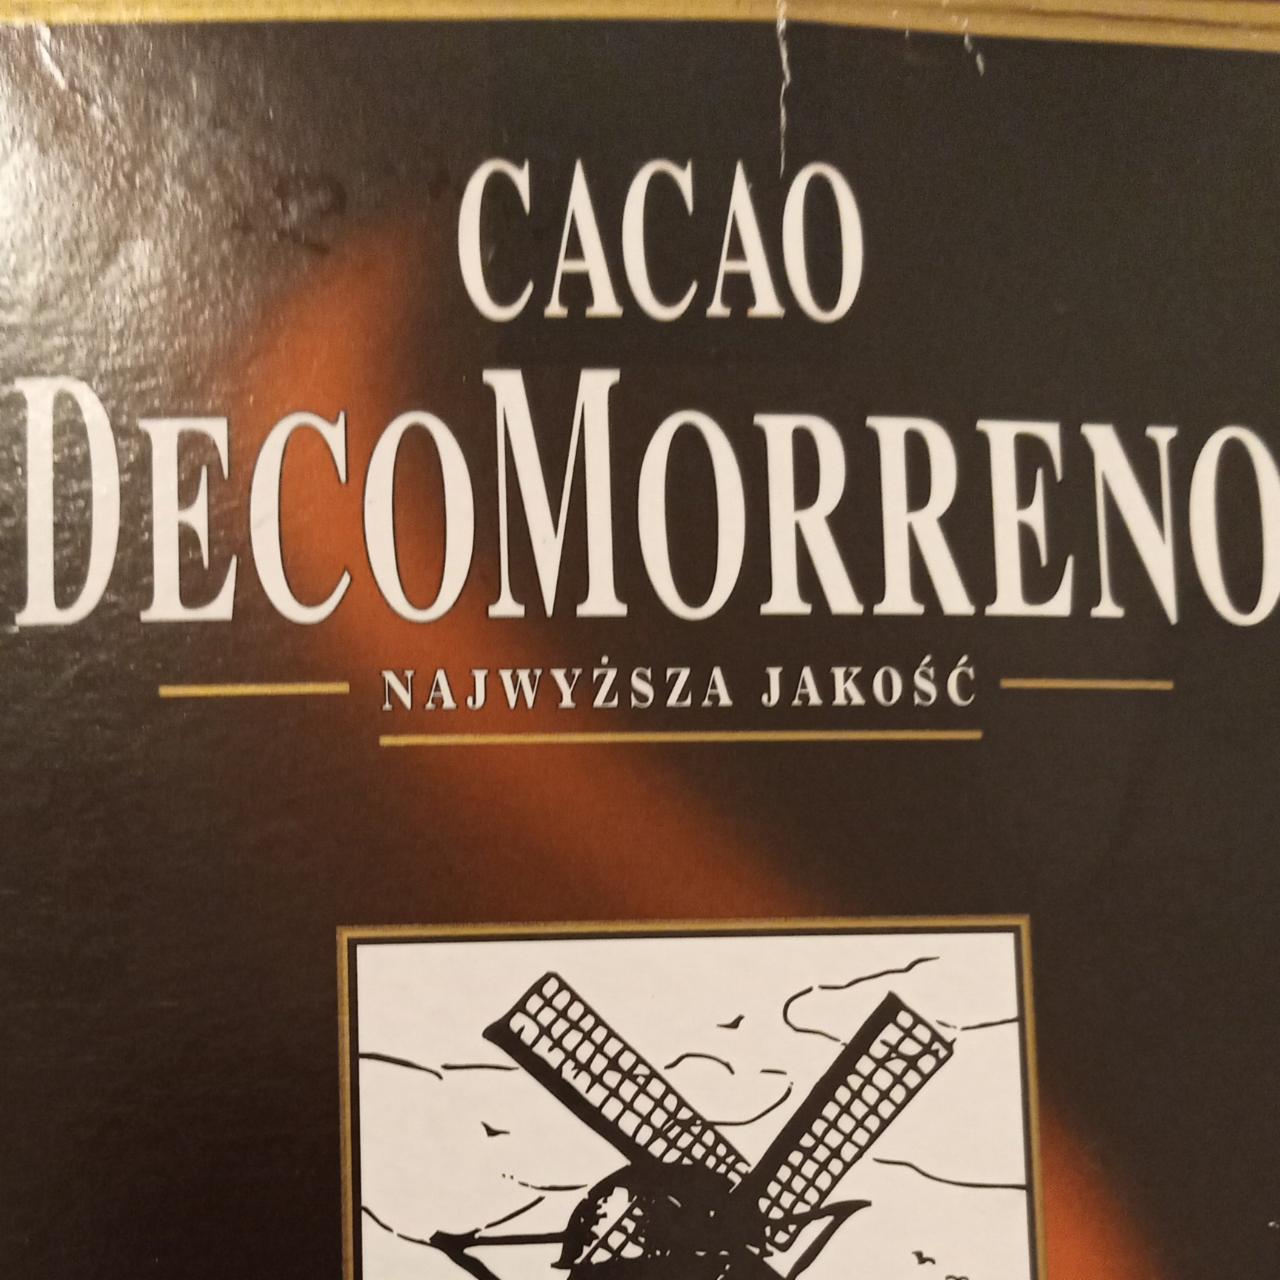 Фото - Cacao DecoMorreno